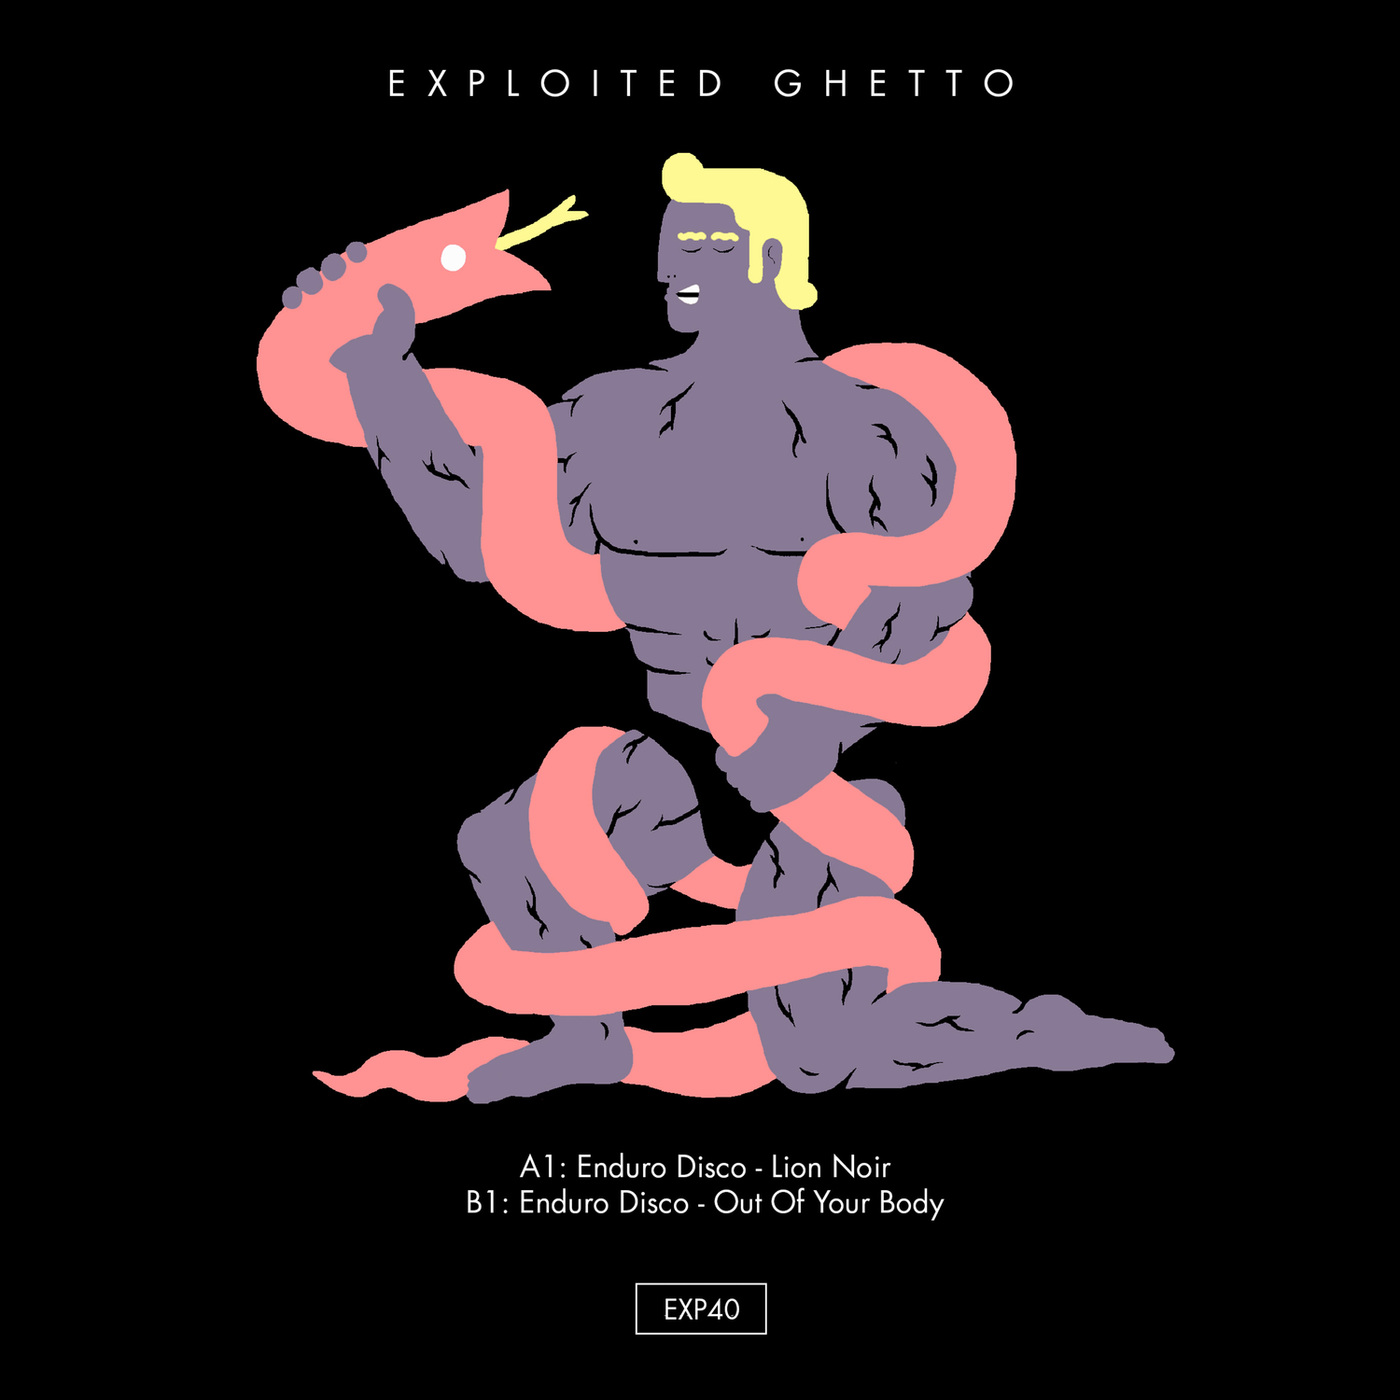 Enduro Disco - Lion Noir / Exploited Ghetto